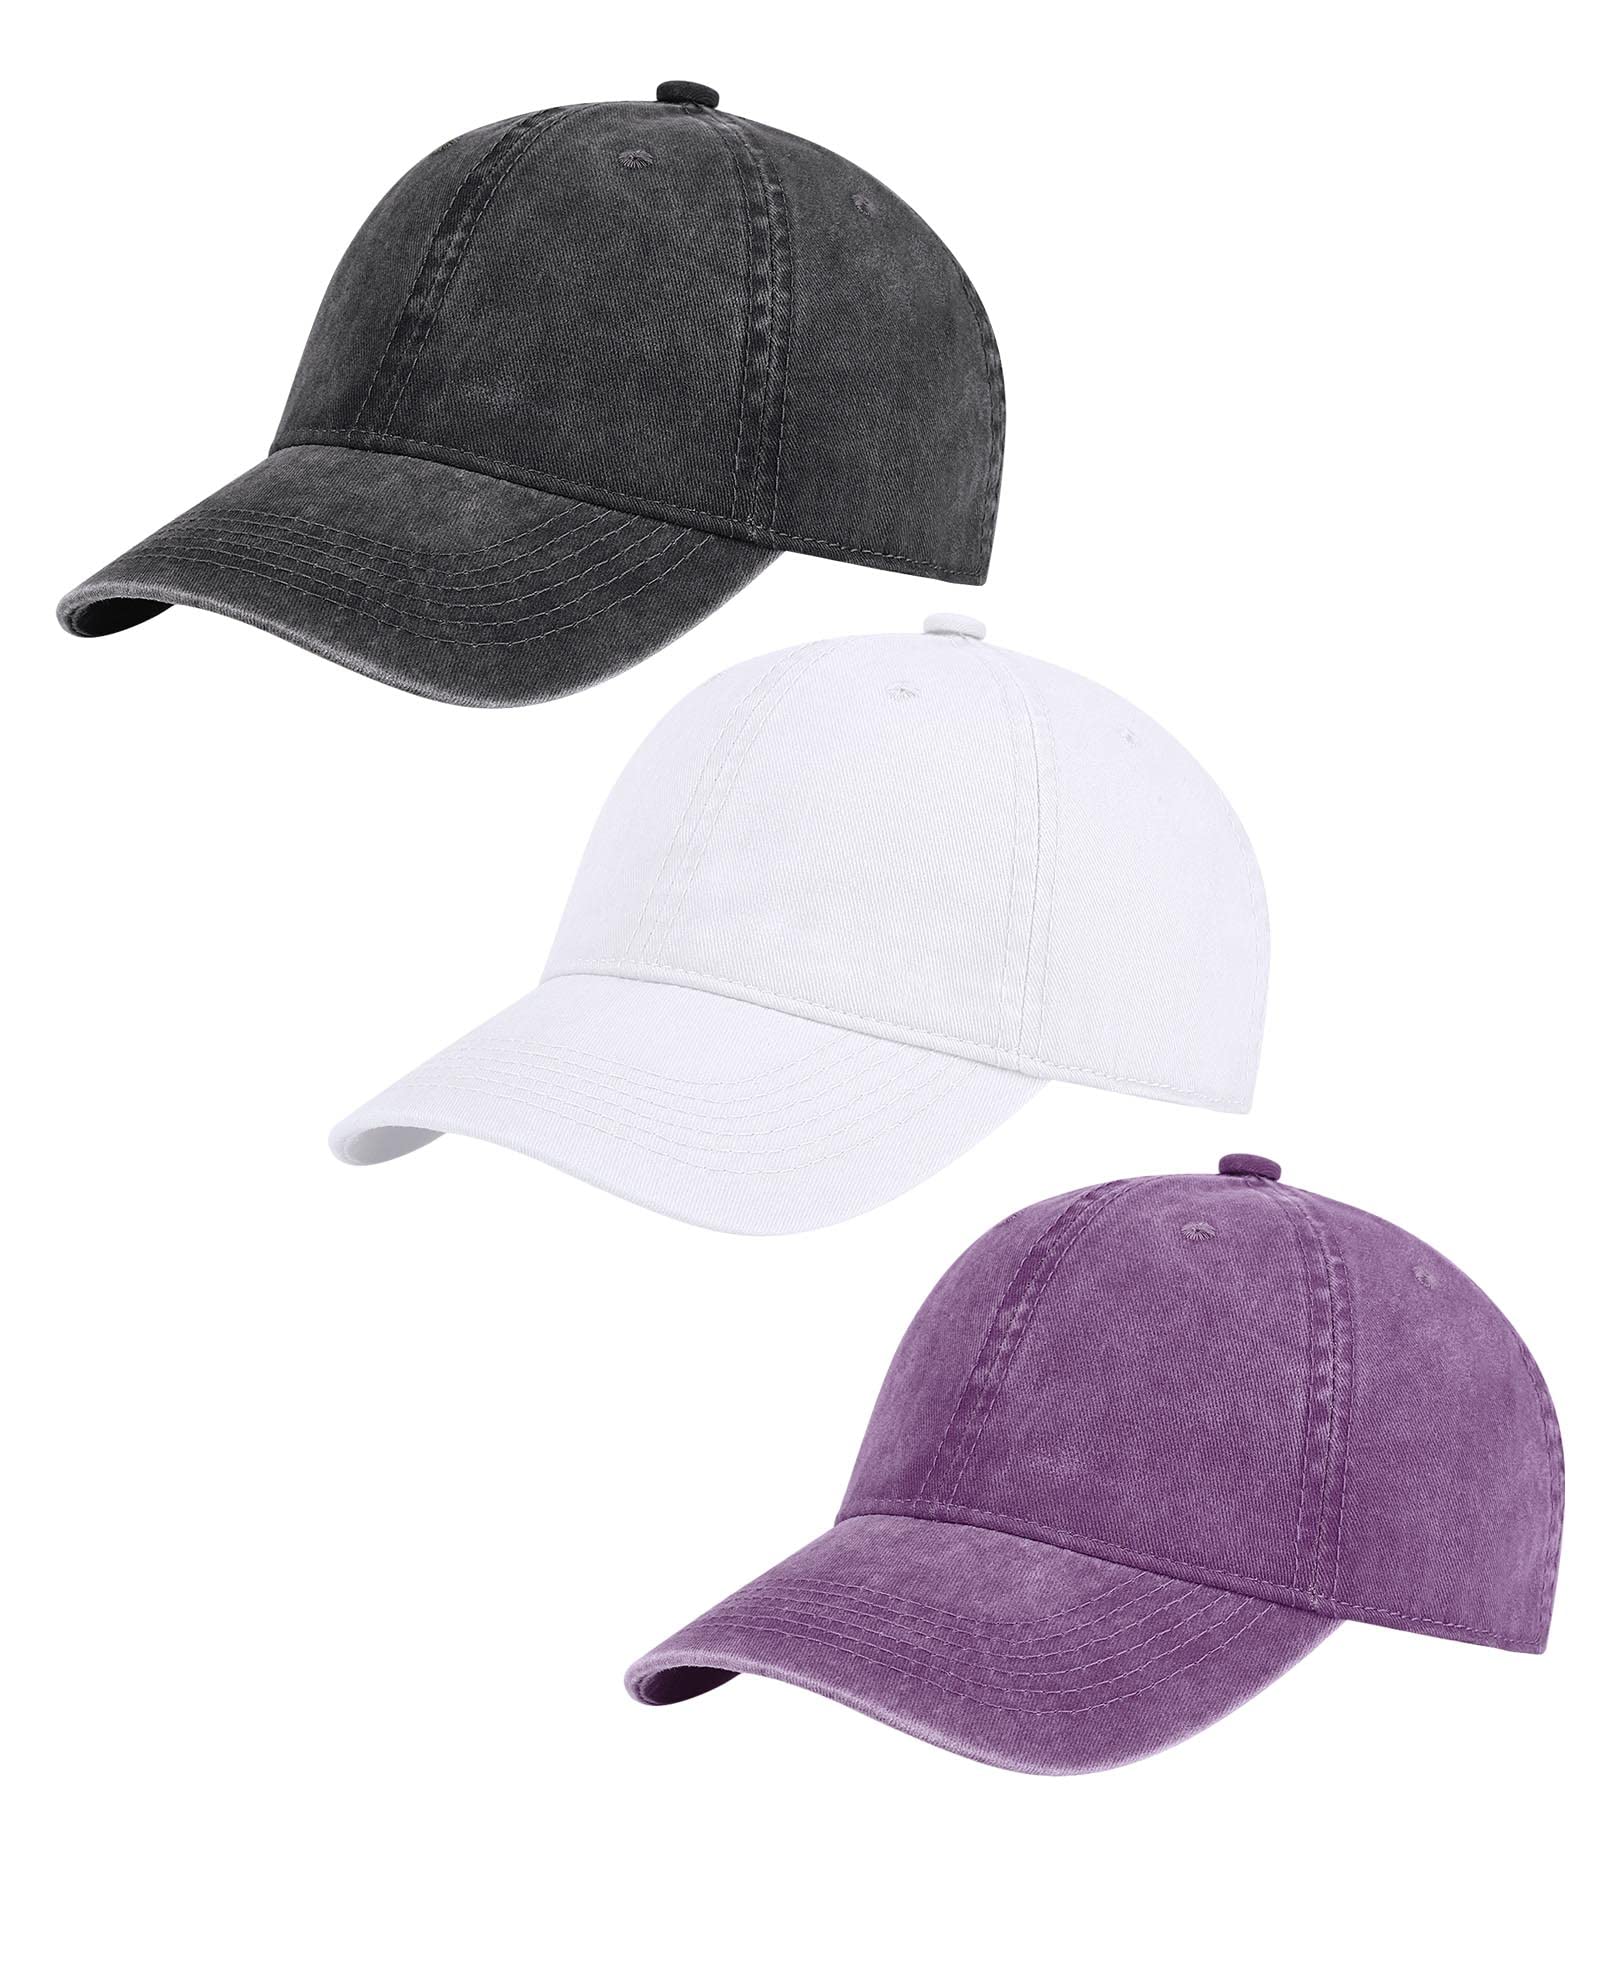 Cricket Sports Logo Baseball Cap for Men Women Hats Adjustable Vintage  Washed Cotton Dad Hat